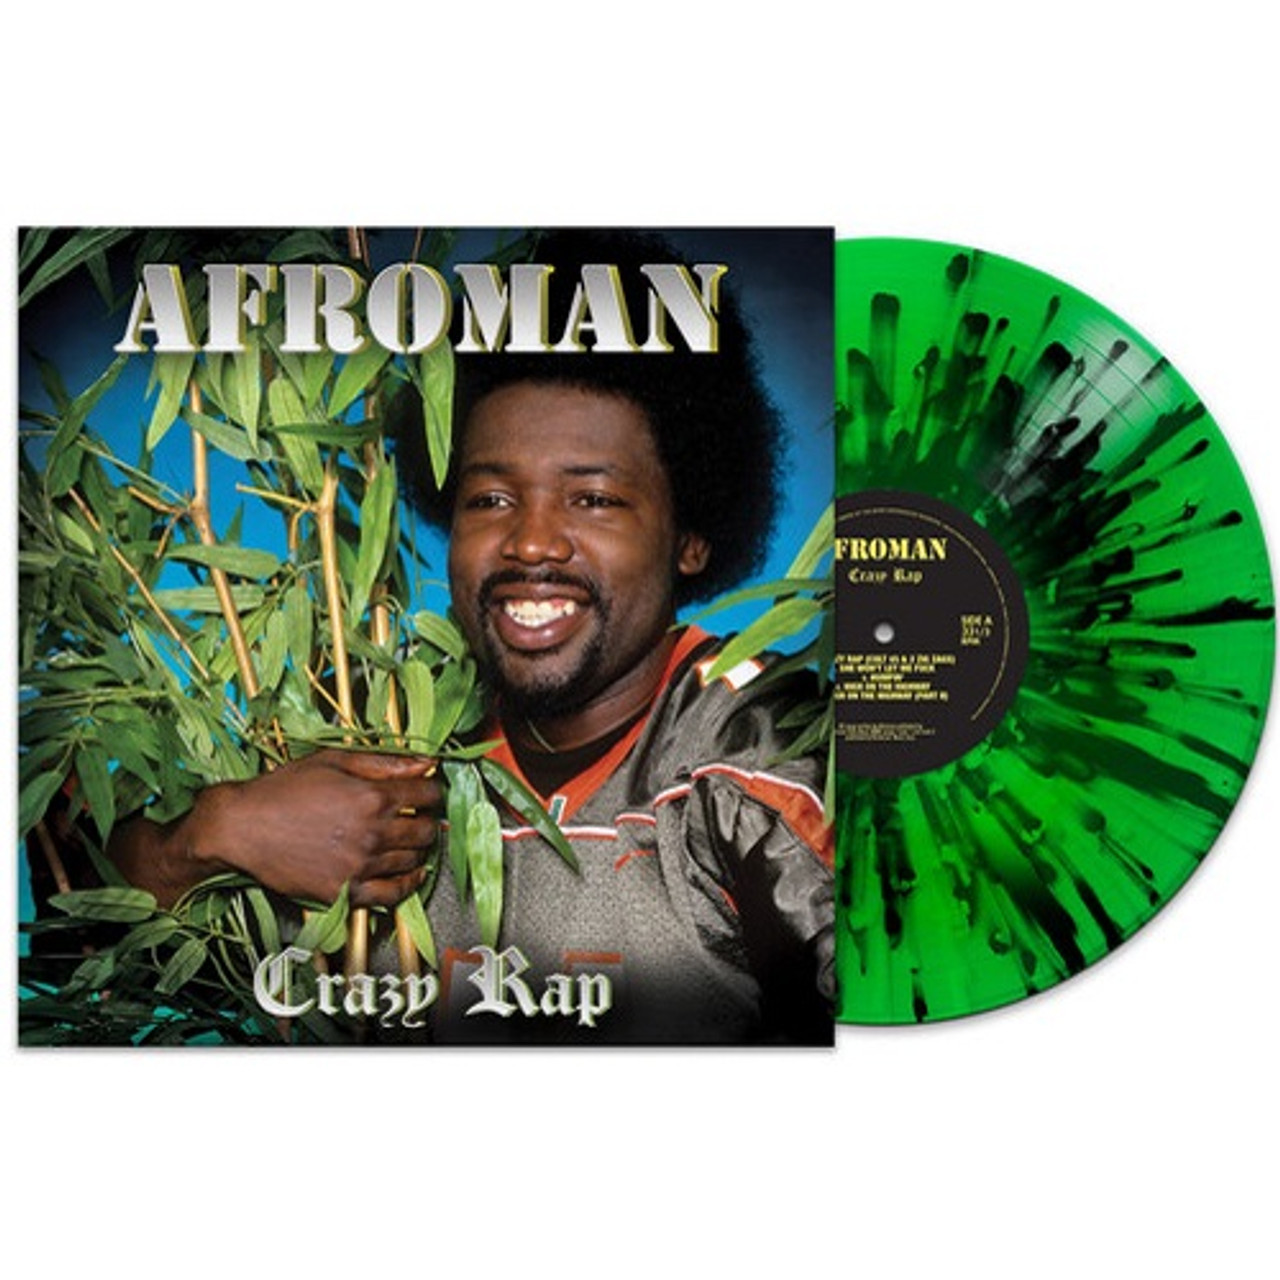 Afroman - Crazy Rap & Black) Vinyl Record